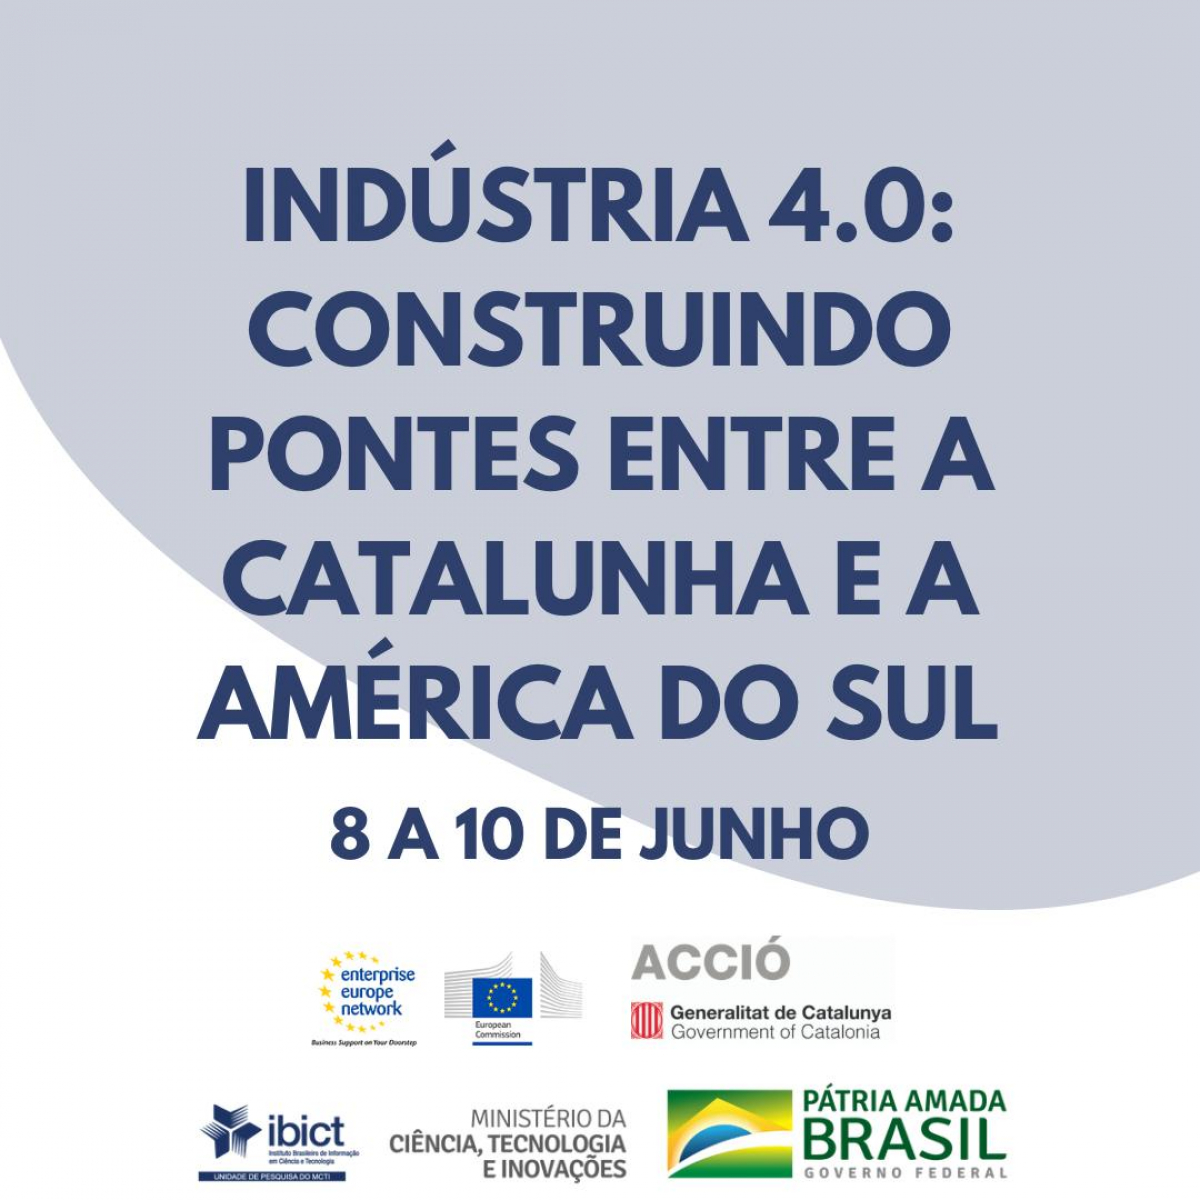 Evento de networking foca na Indústria 4.0 e na conexão Catalunha e América do Su